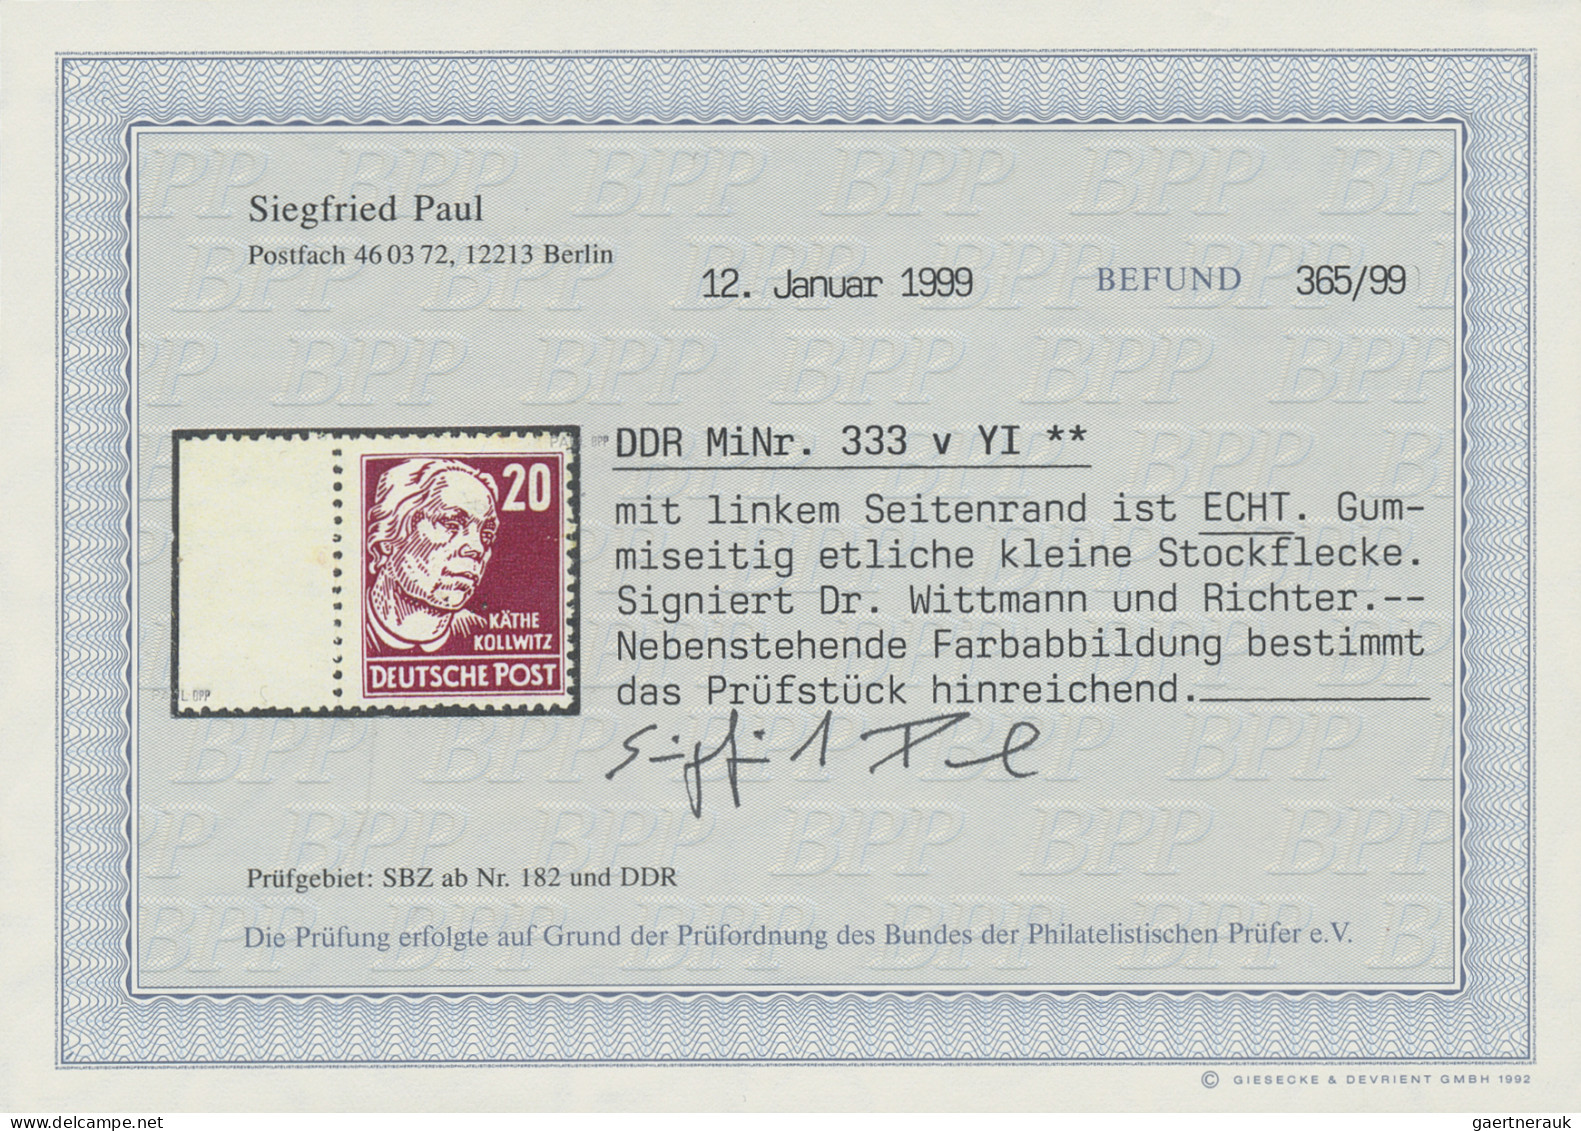 DDR: 1953, Persönlichkeiten: K. Kollwitz 20 (Pf) Karminrot, Auf Gestrichenem Pap - Unused Stamps